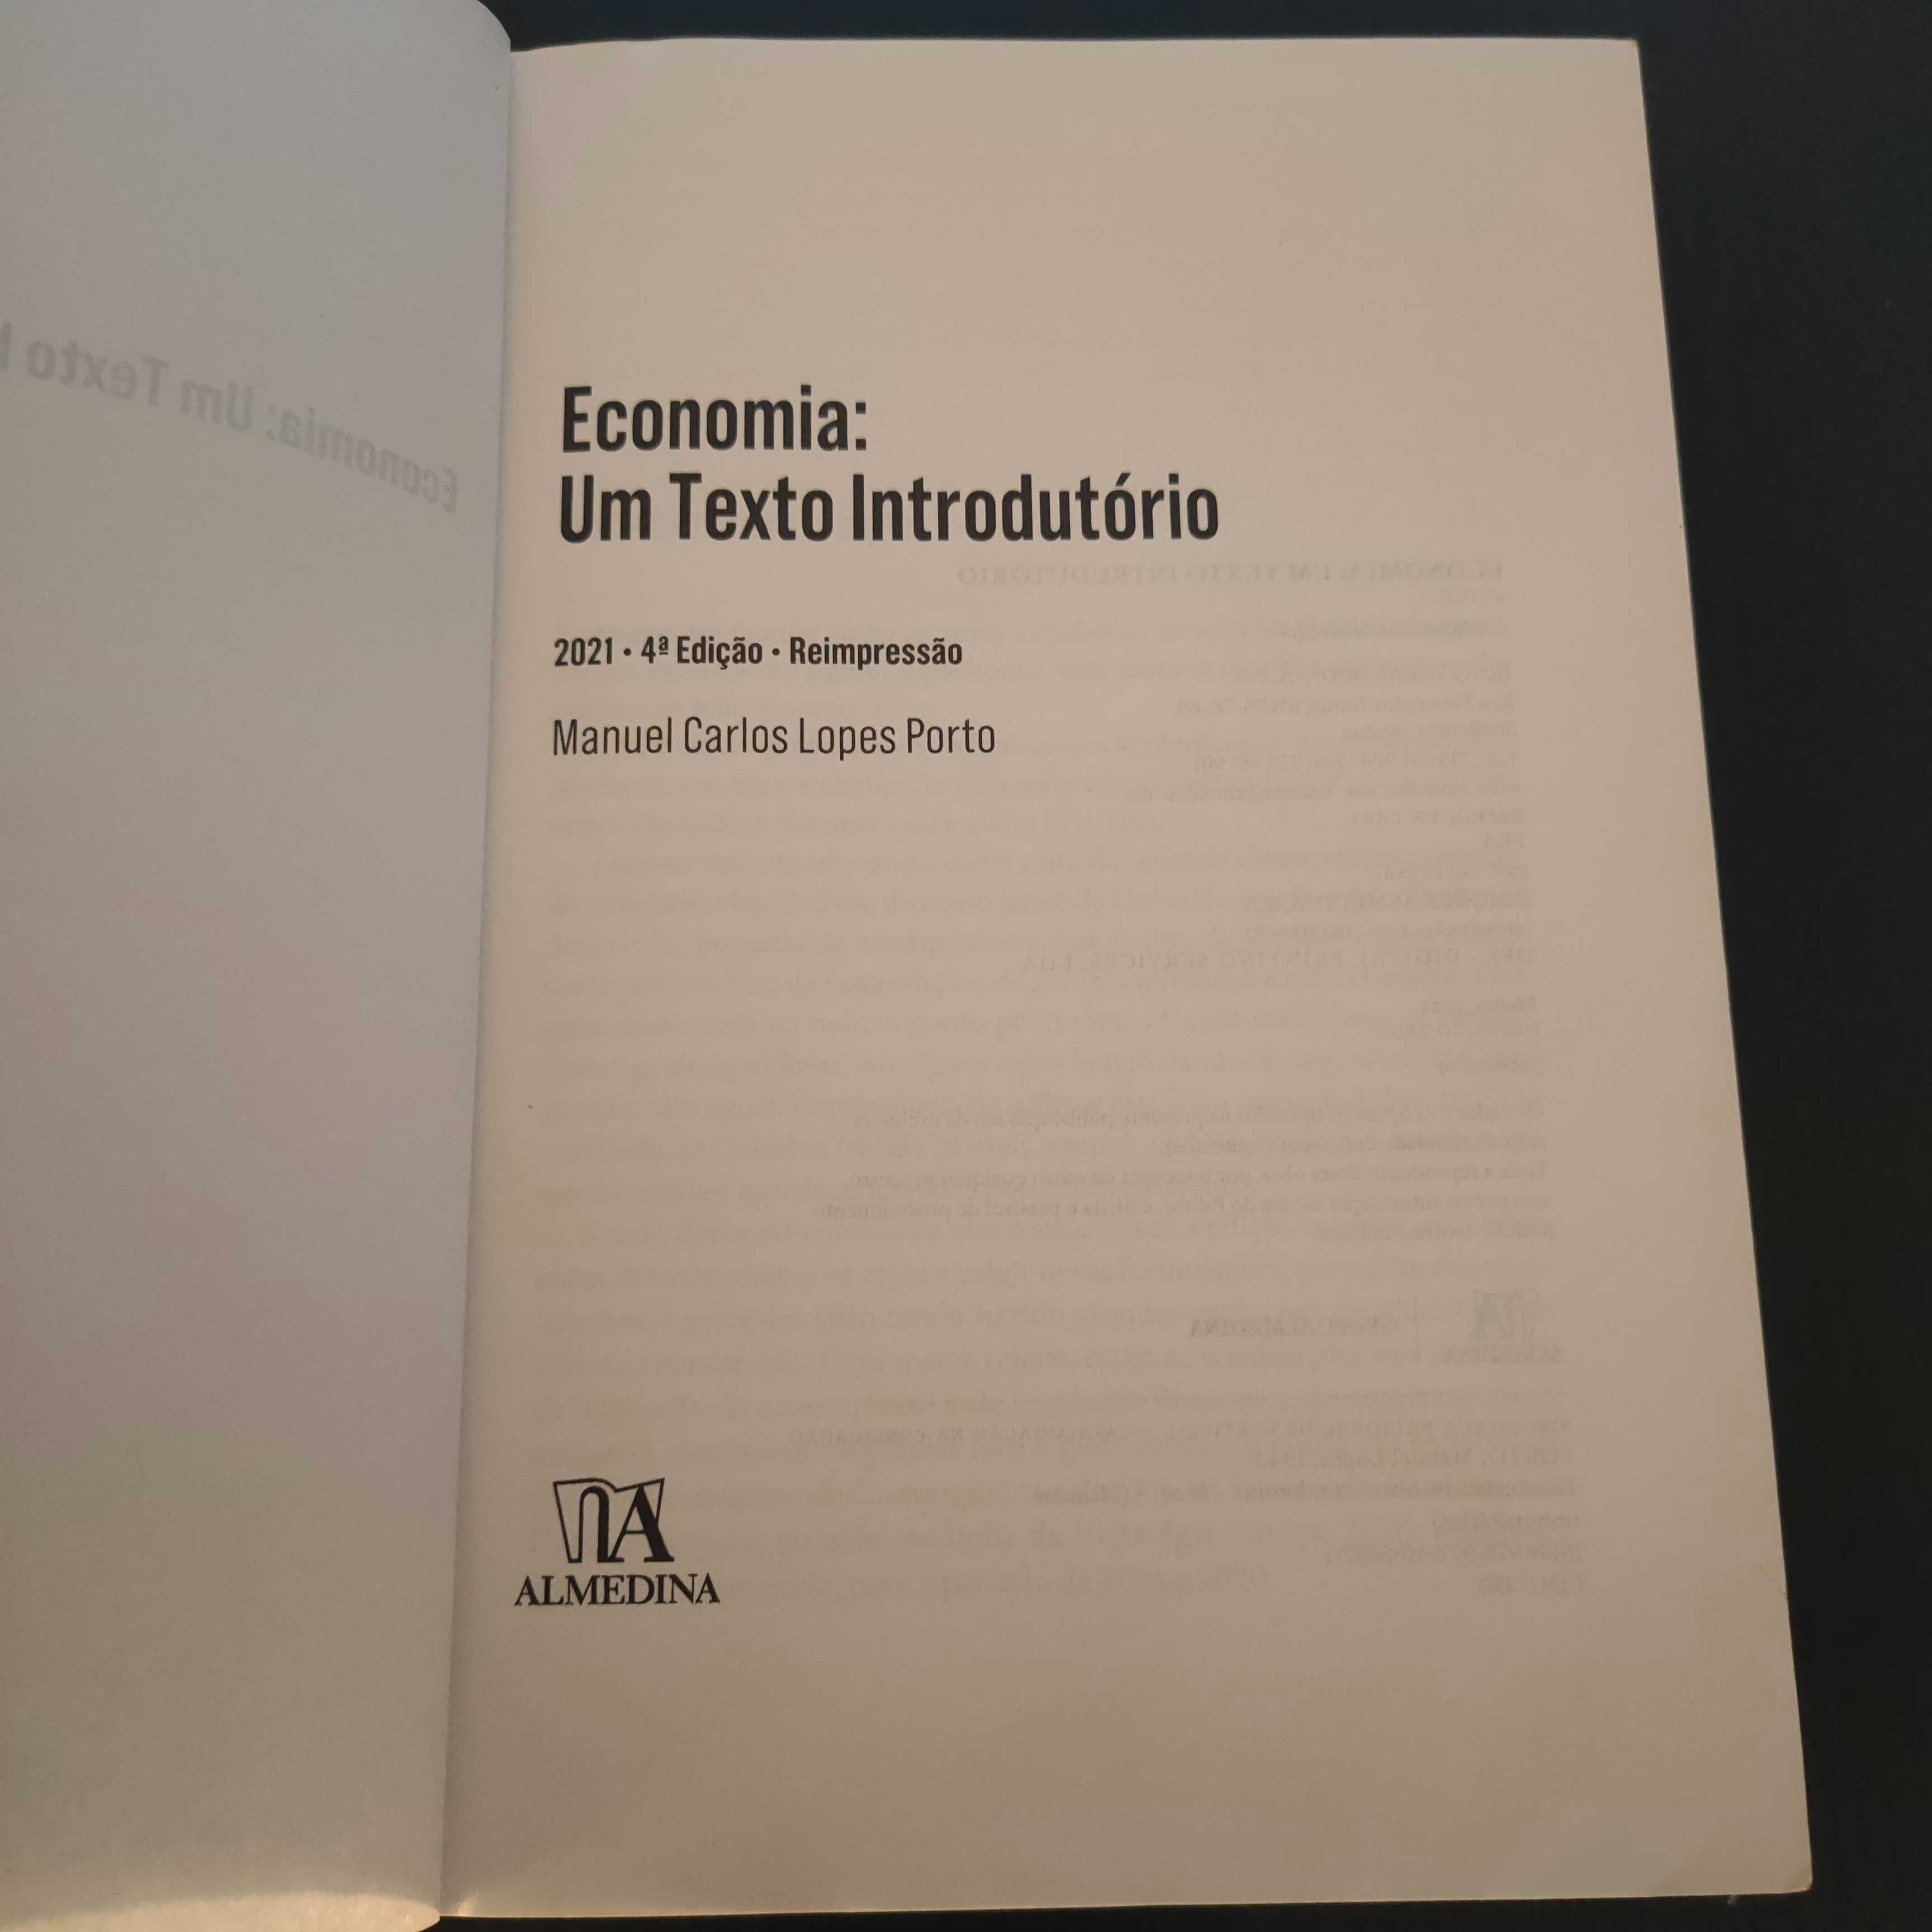 Economia: Um texto Introdutório. Manuel Porto 4ª Edição - 2021